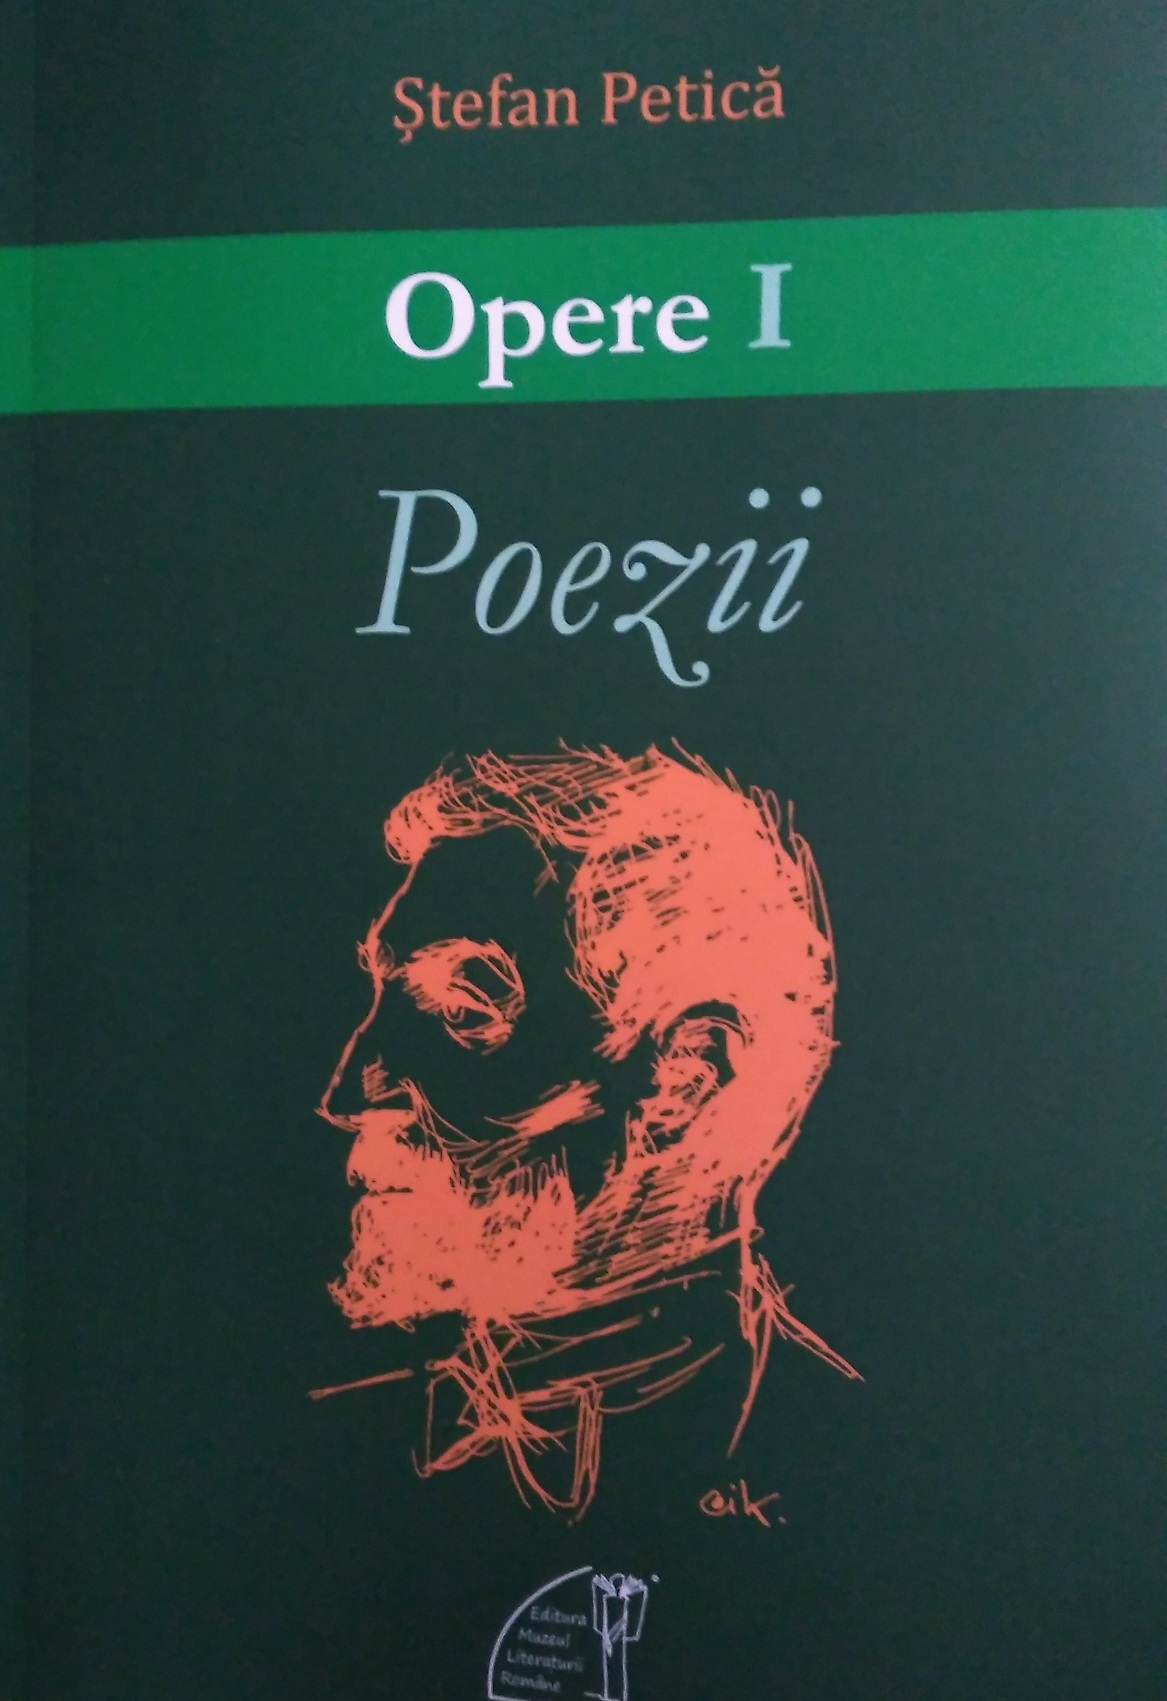 copertă volum Poezii St Petică